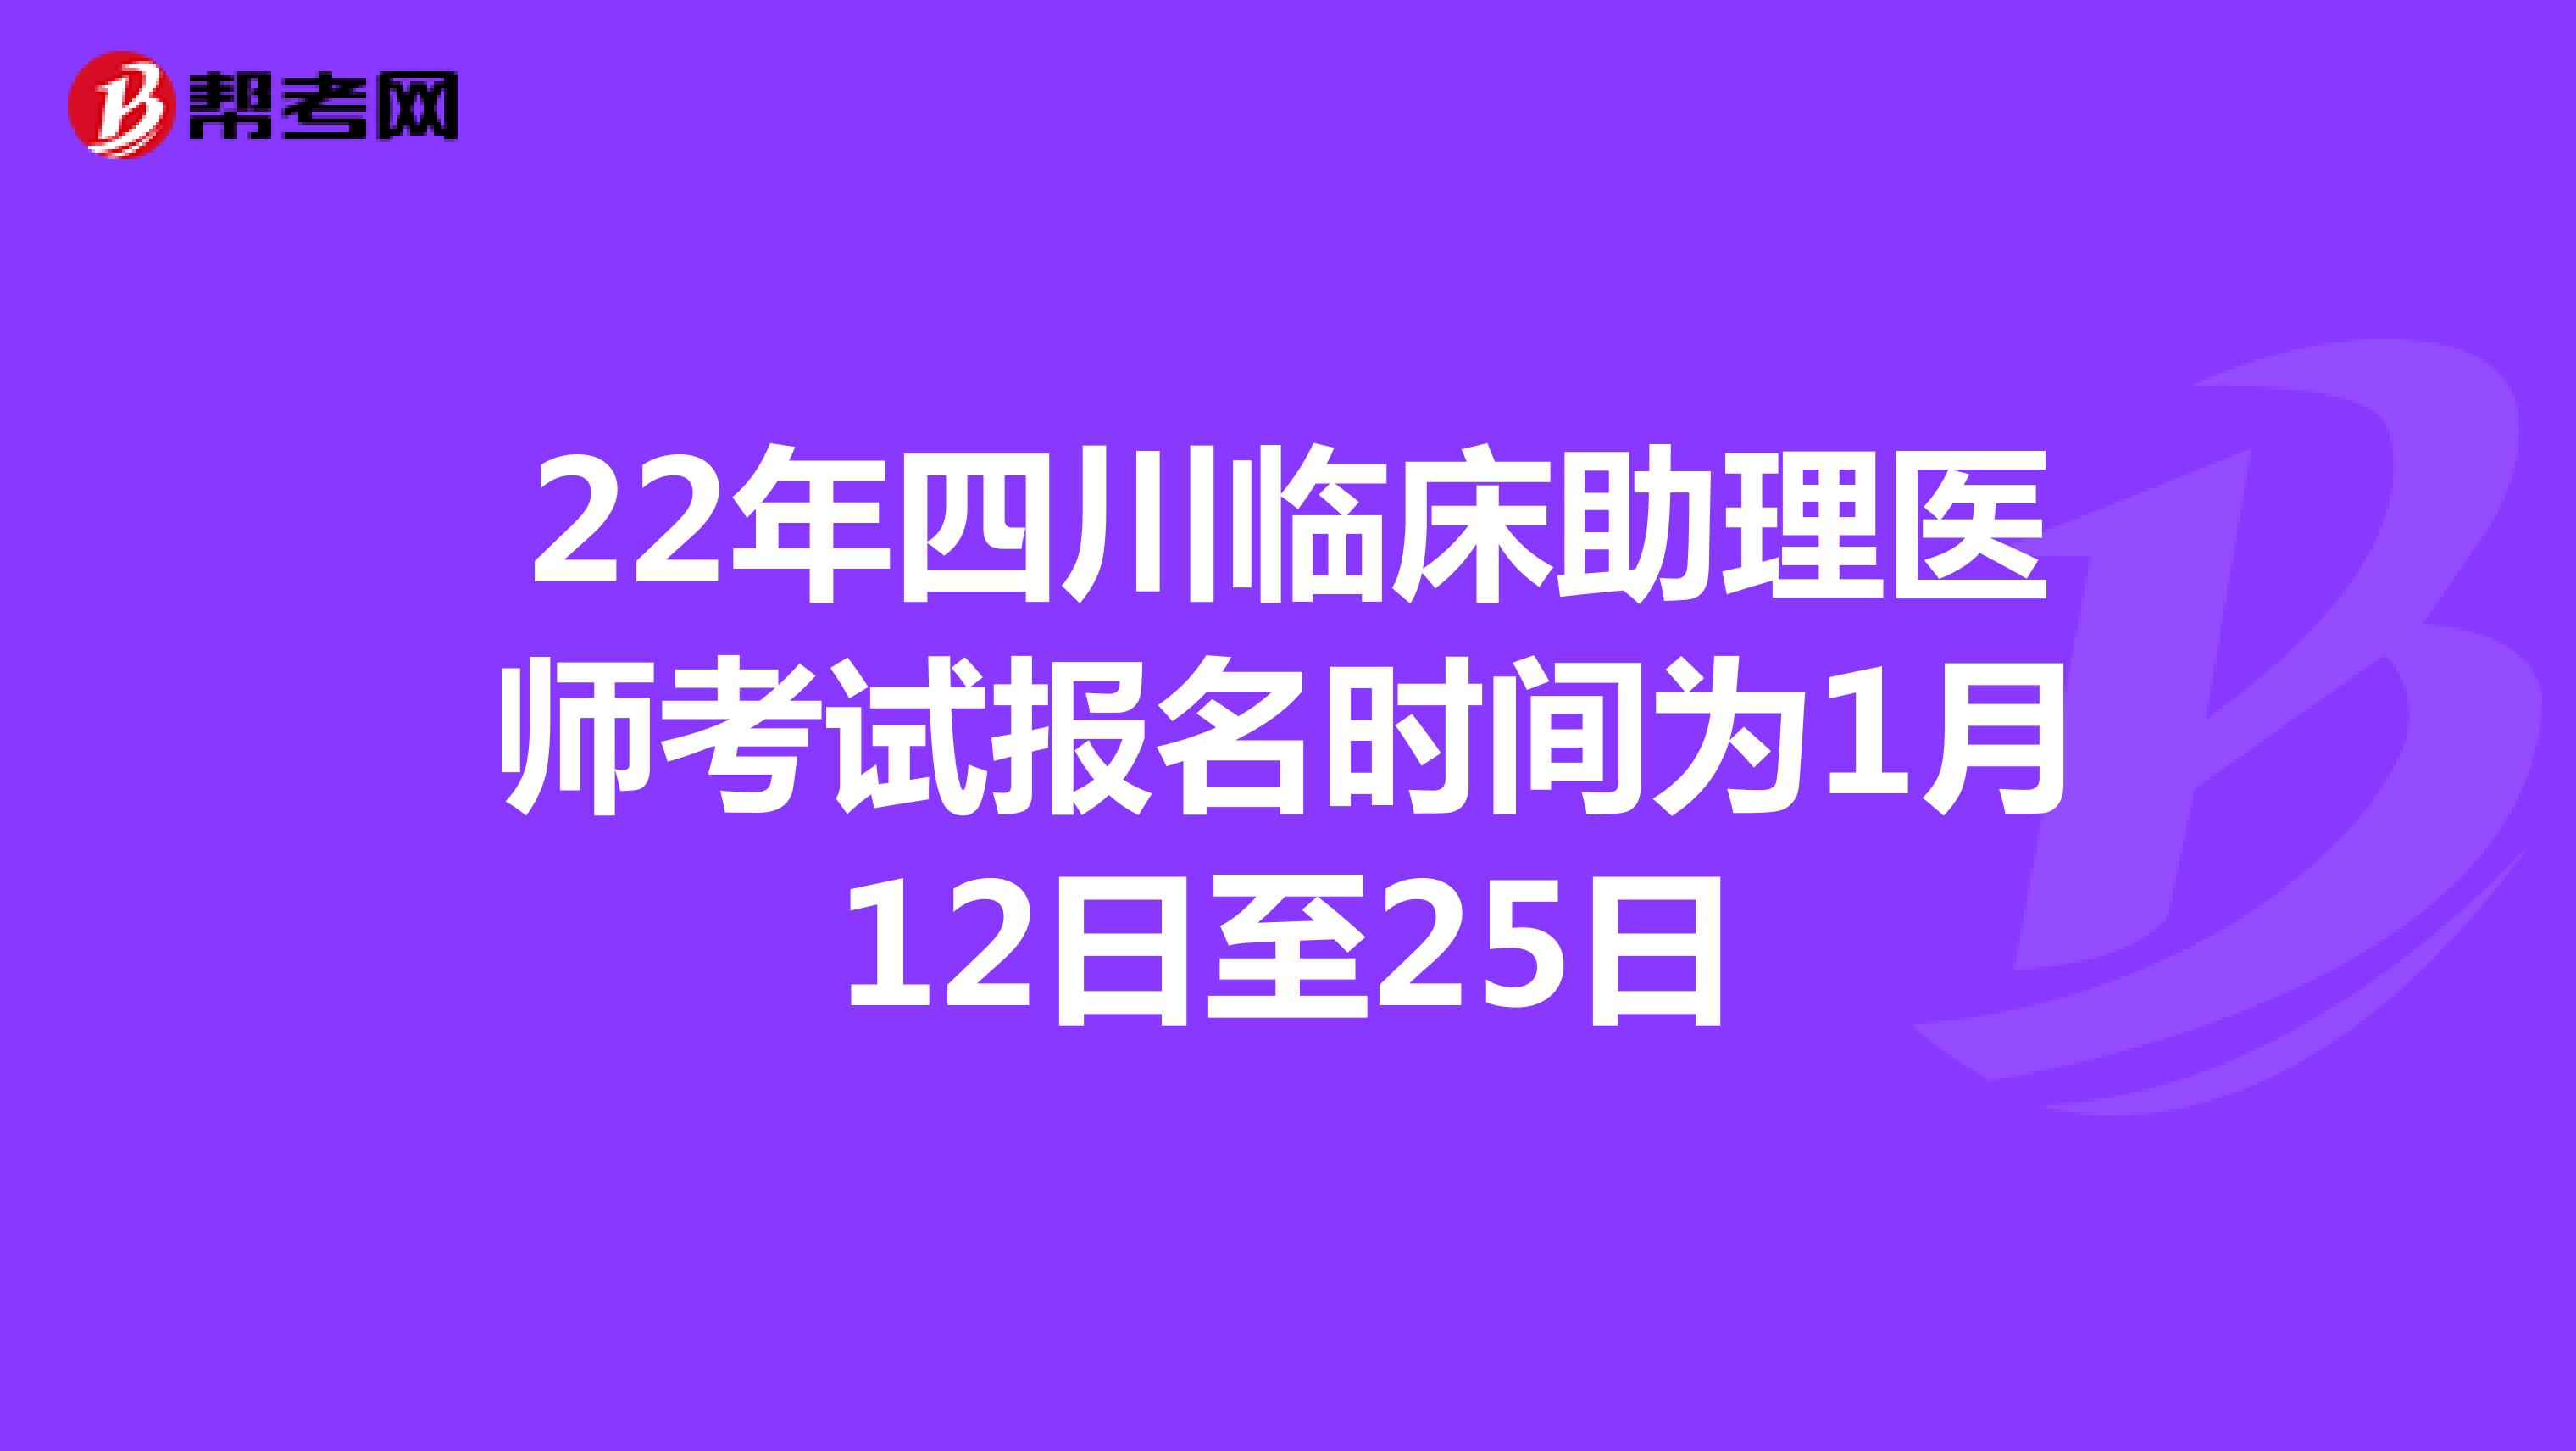 22年四川临床助理医师考试报名时间为1月12日至25日